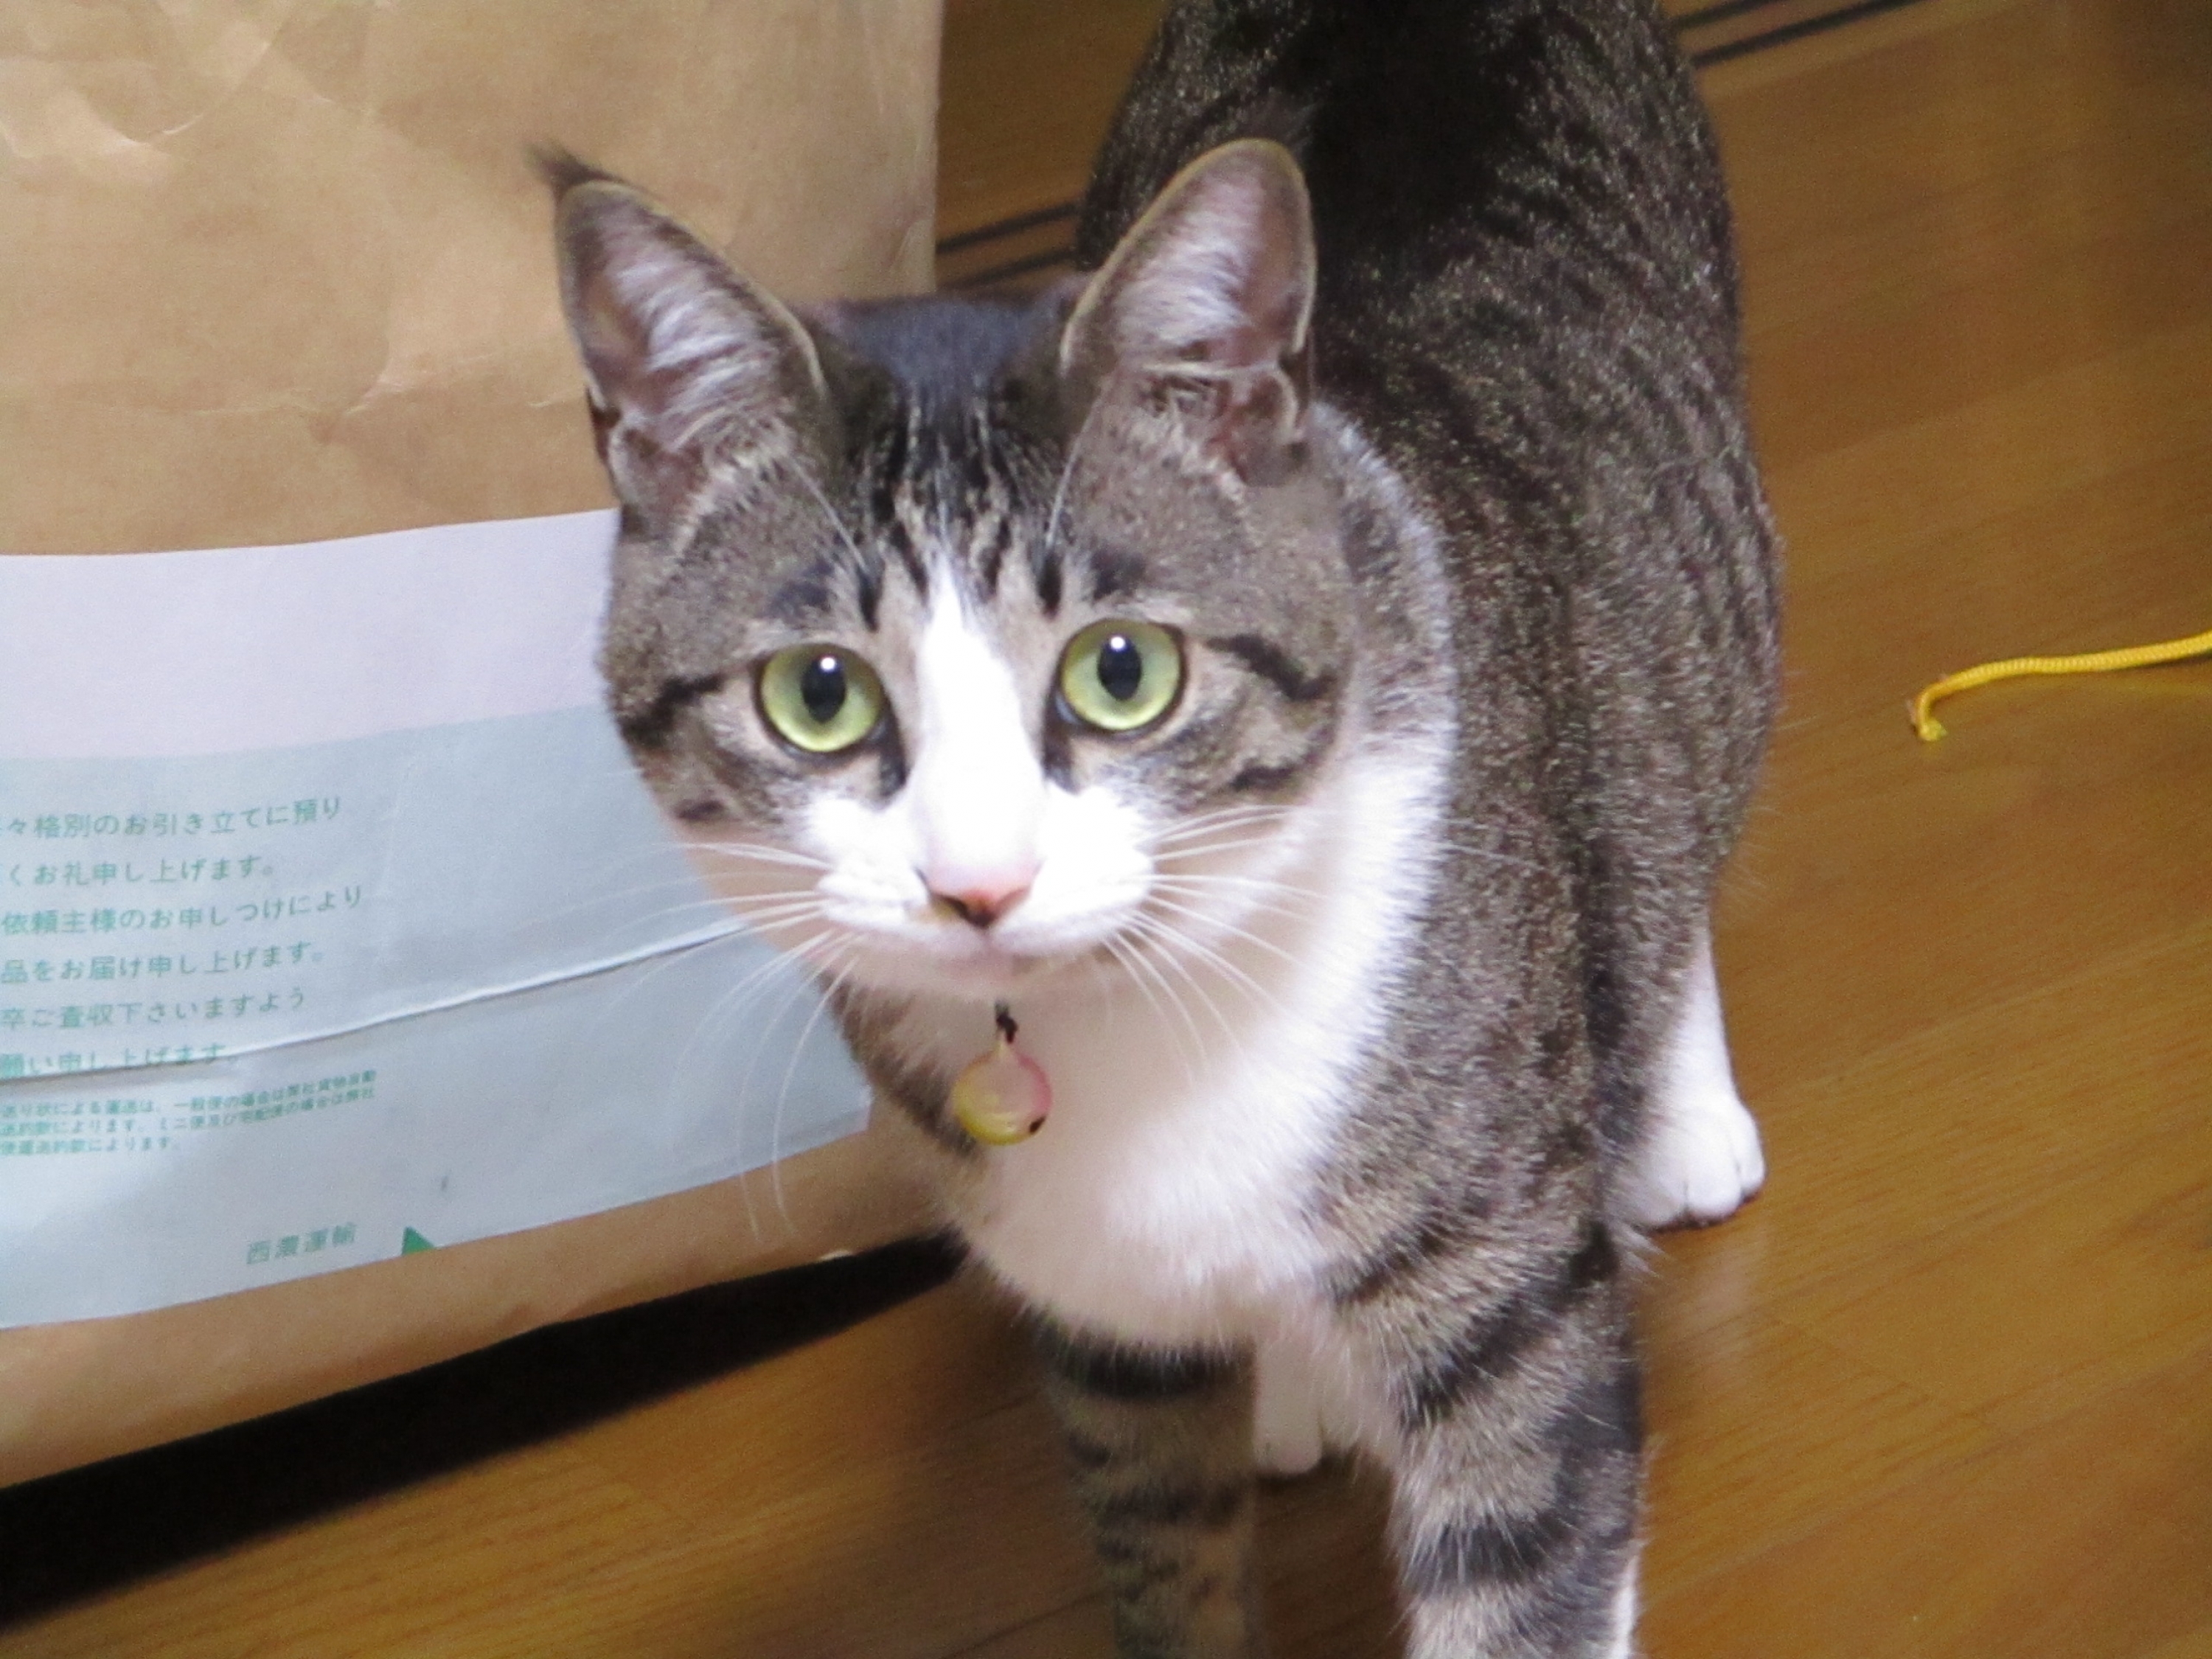 確保】[愛知県一宮市]猫を探しています。グレーのトラ猫 迷彩柄の首輪 